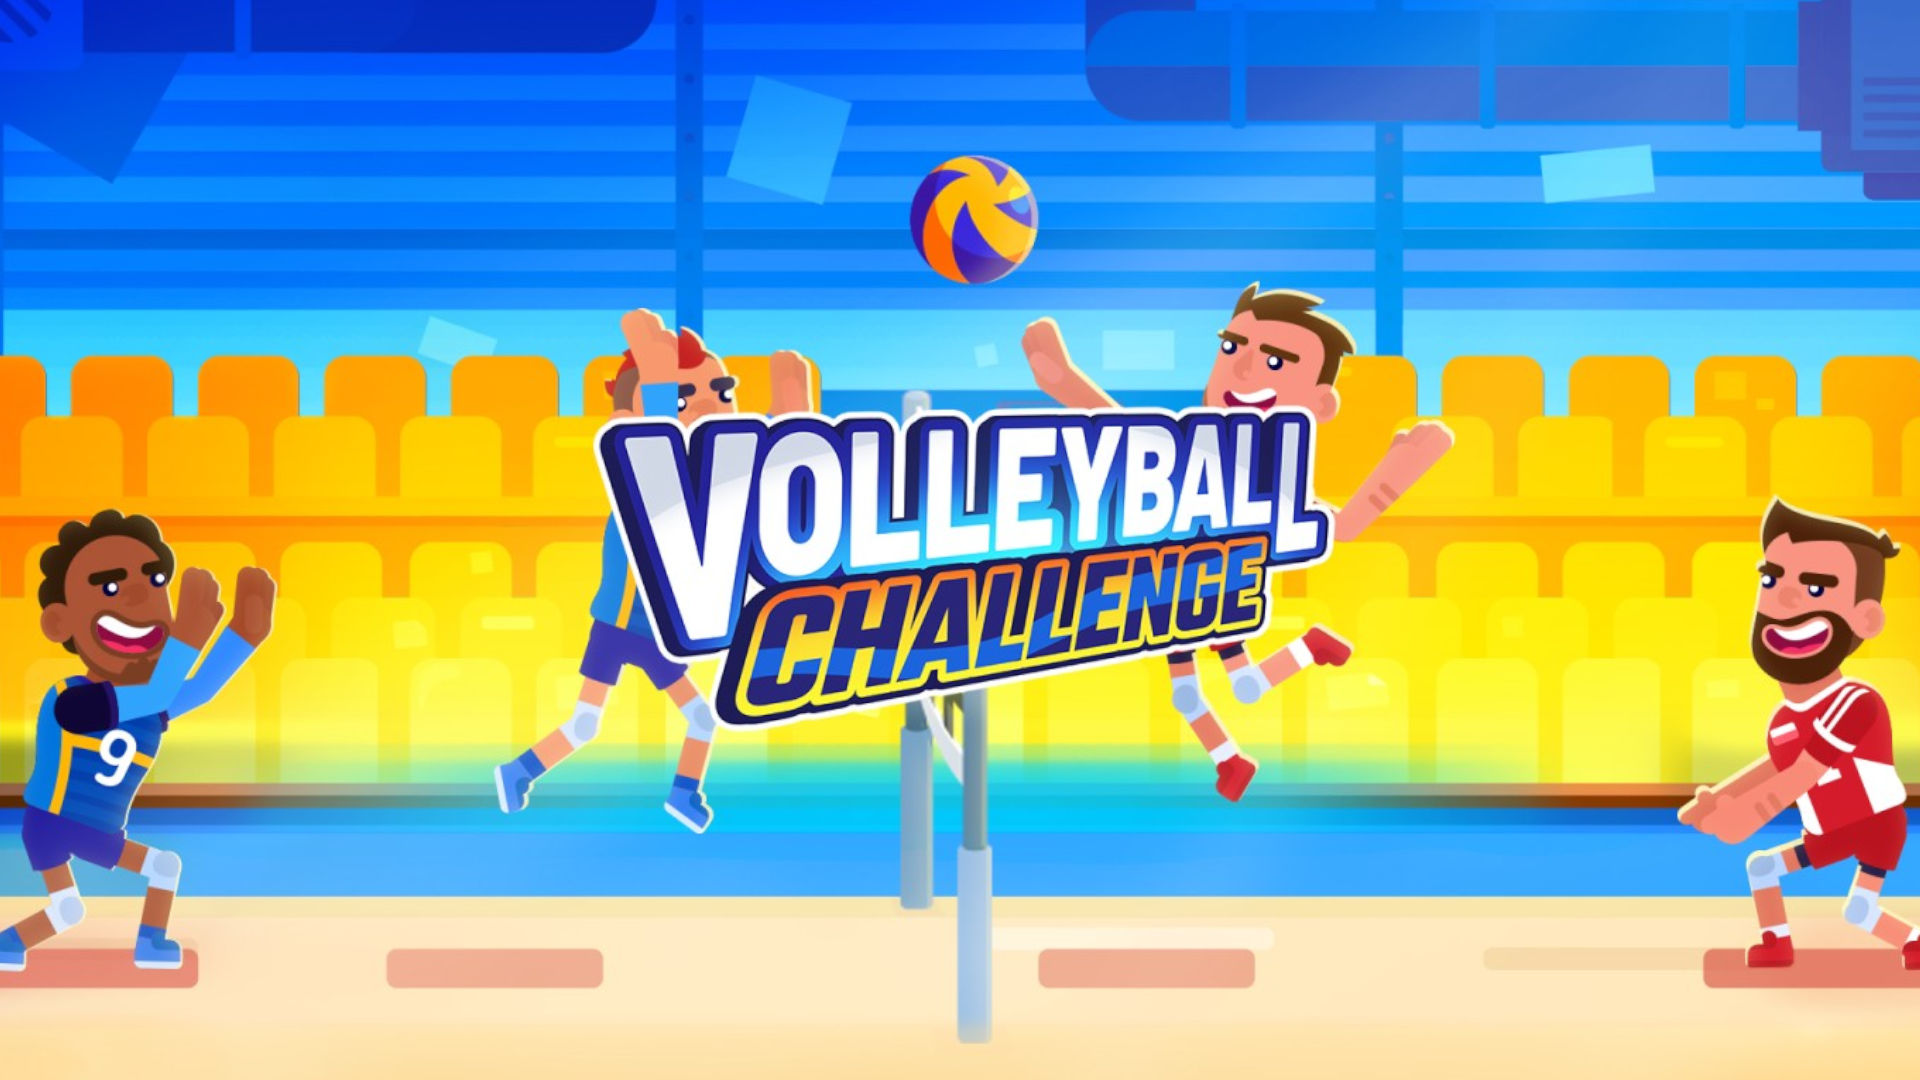 優れた 2D バレーボール ゲームの 1 つである Volleyball Challenge のカバー アート